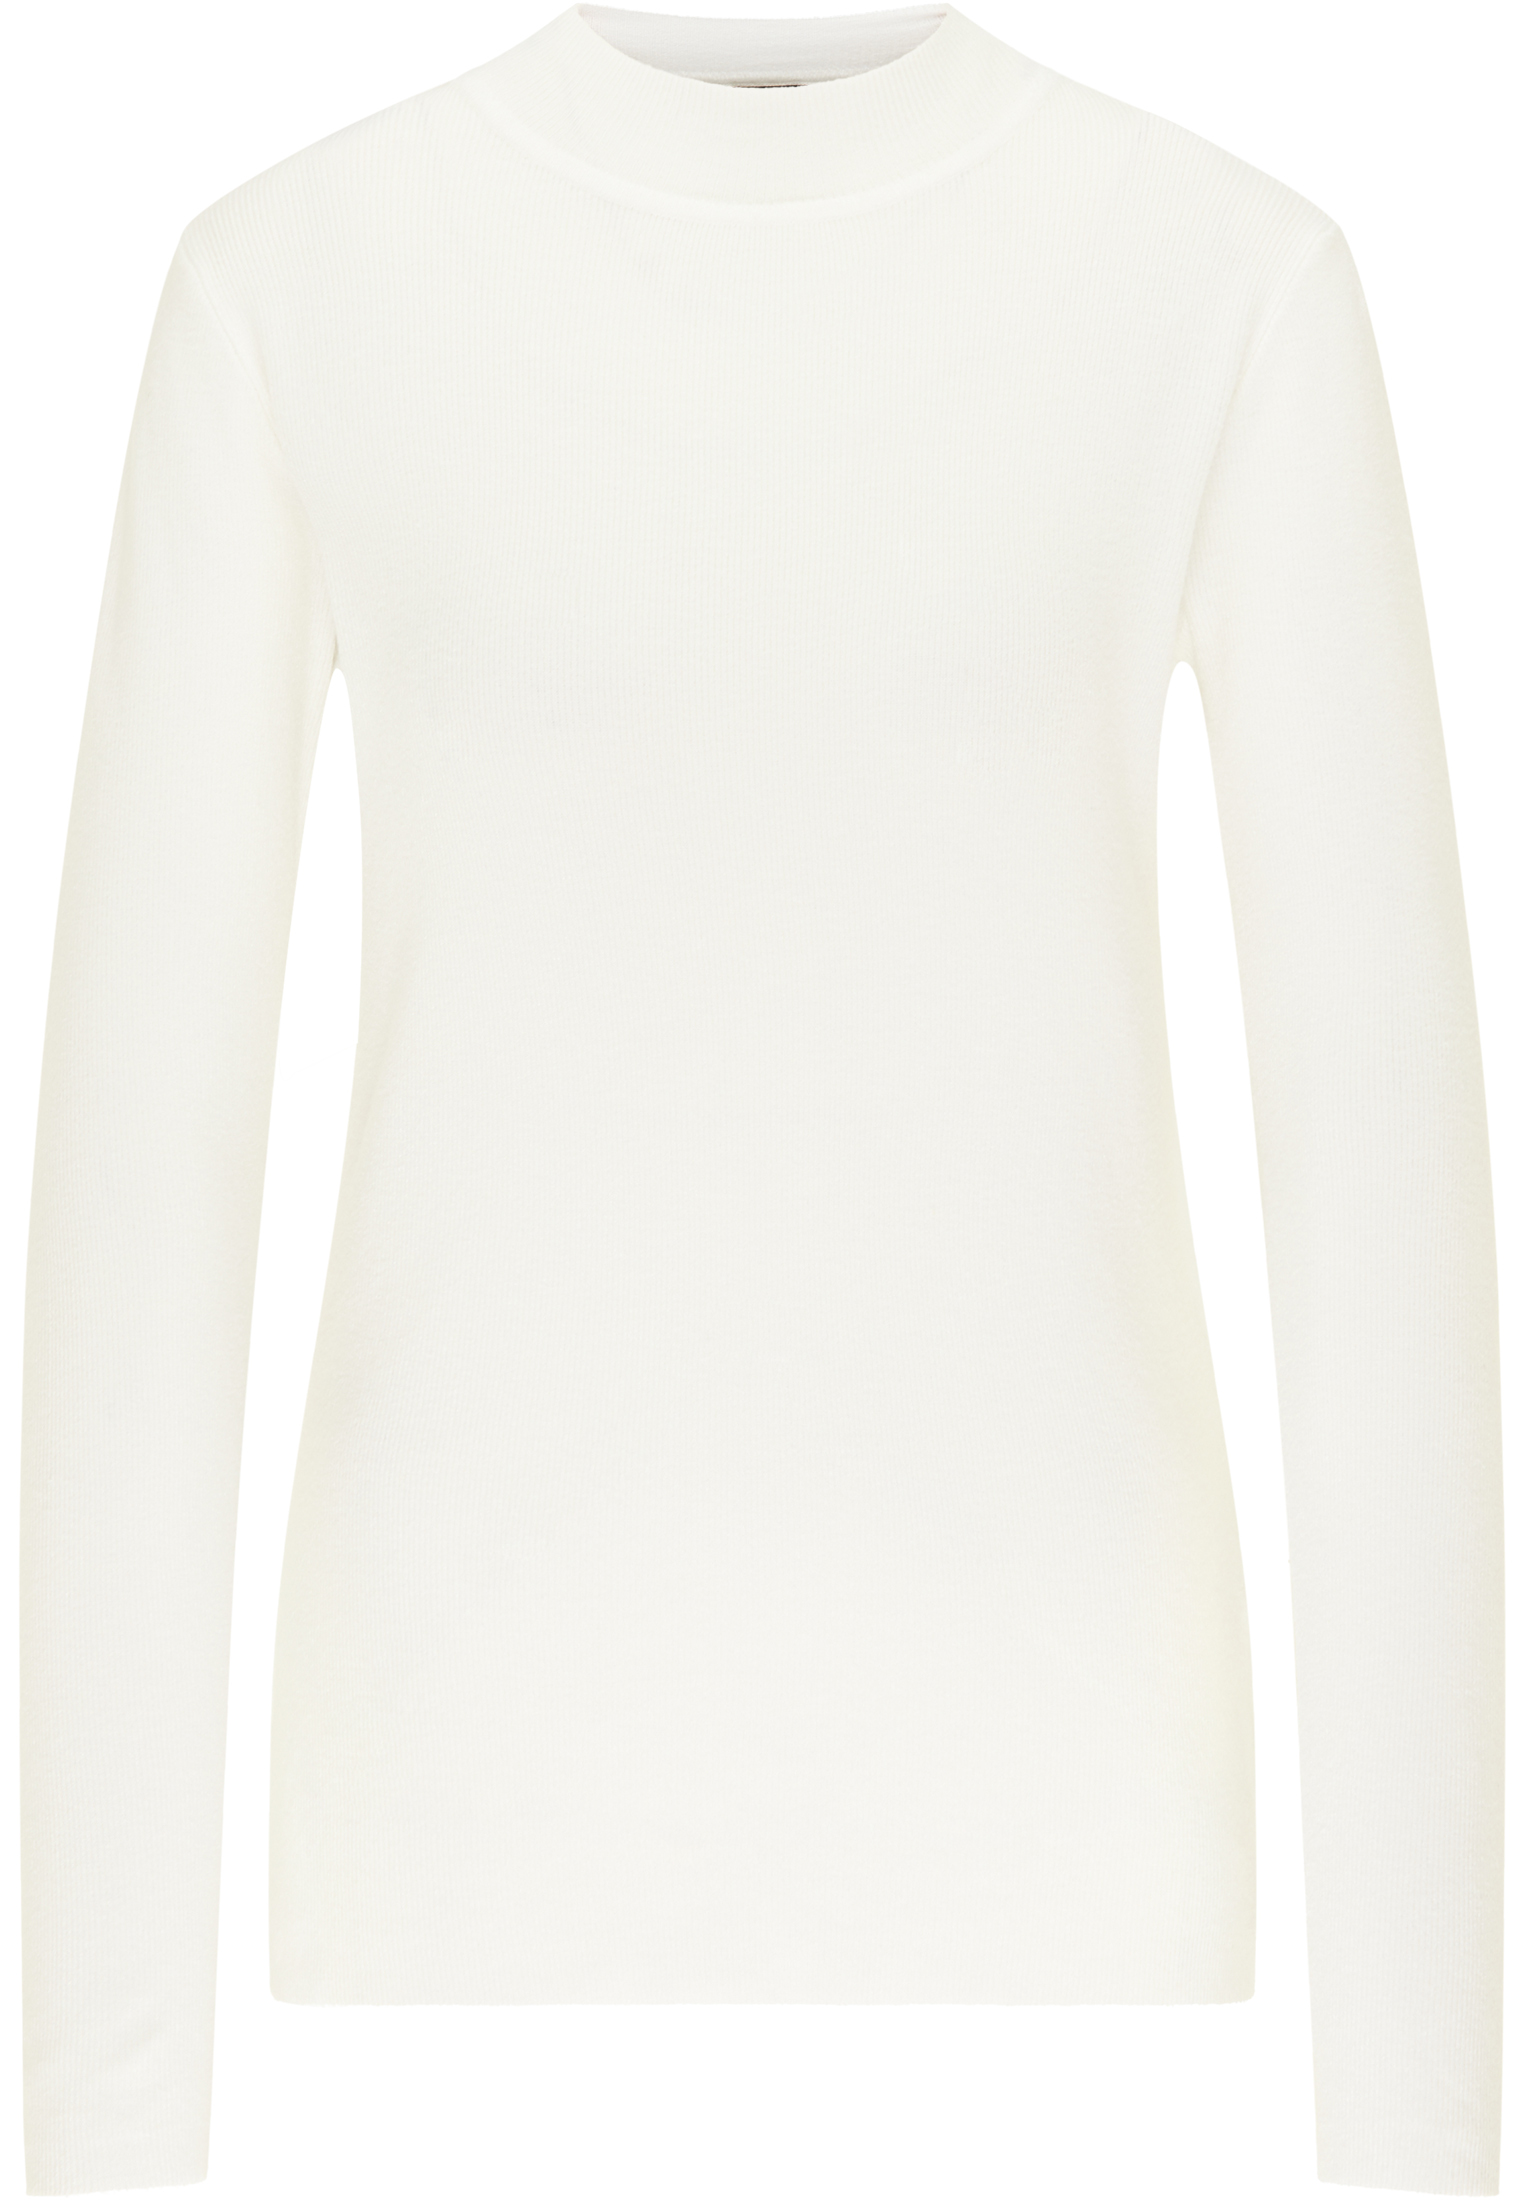 Taglie comode Donna DreiMaster Klassik Pullover in Bianco 